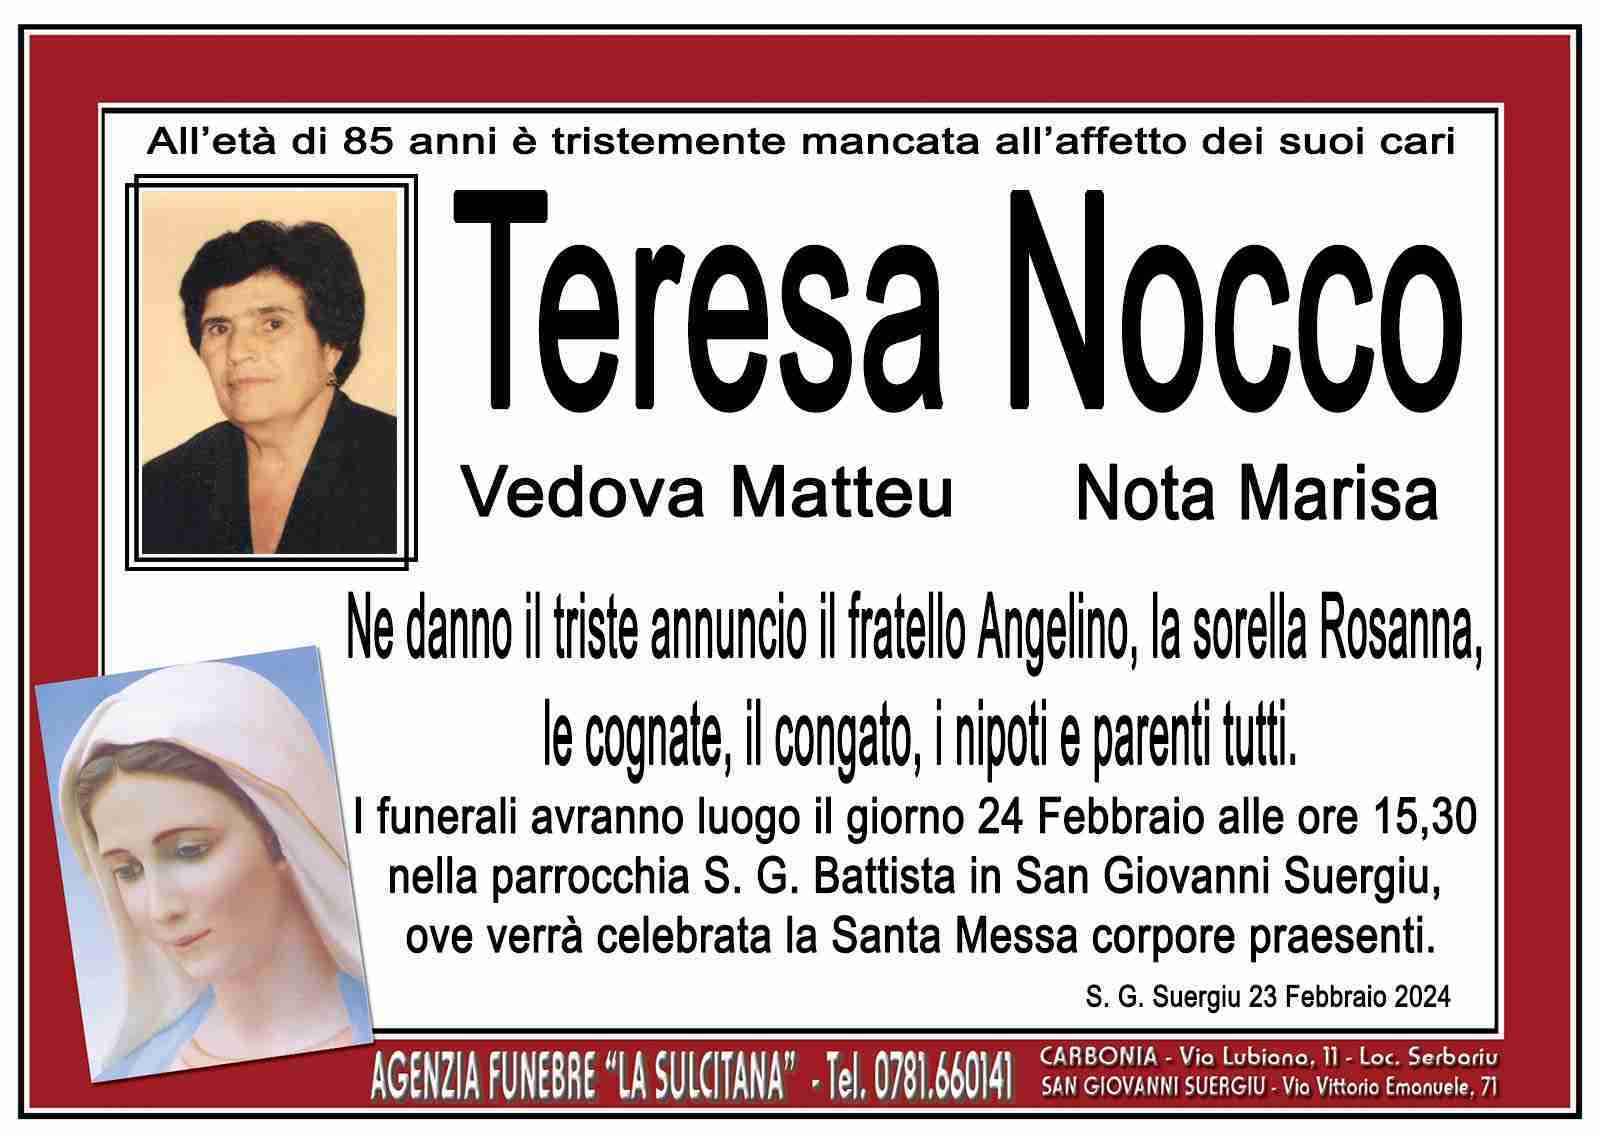 Teresa Nocco nota Marisa